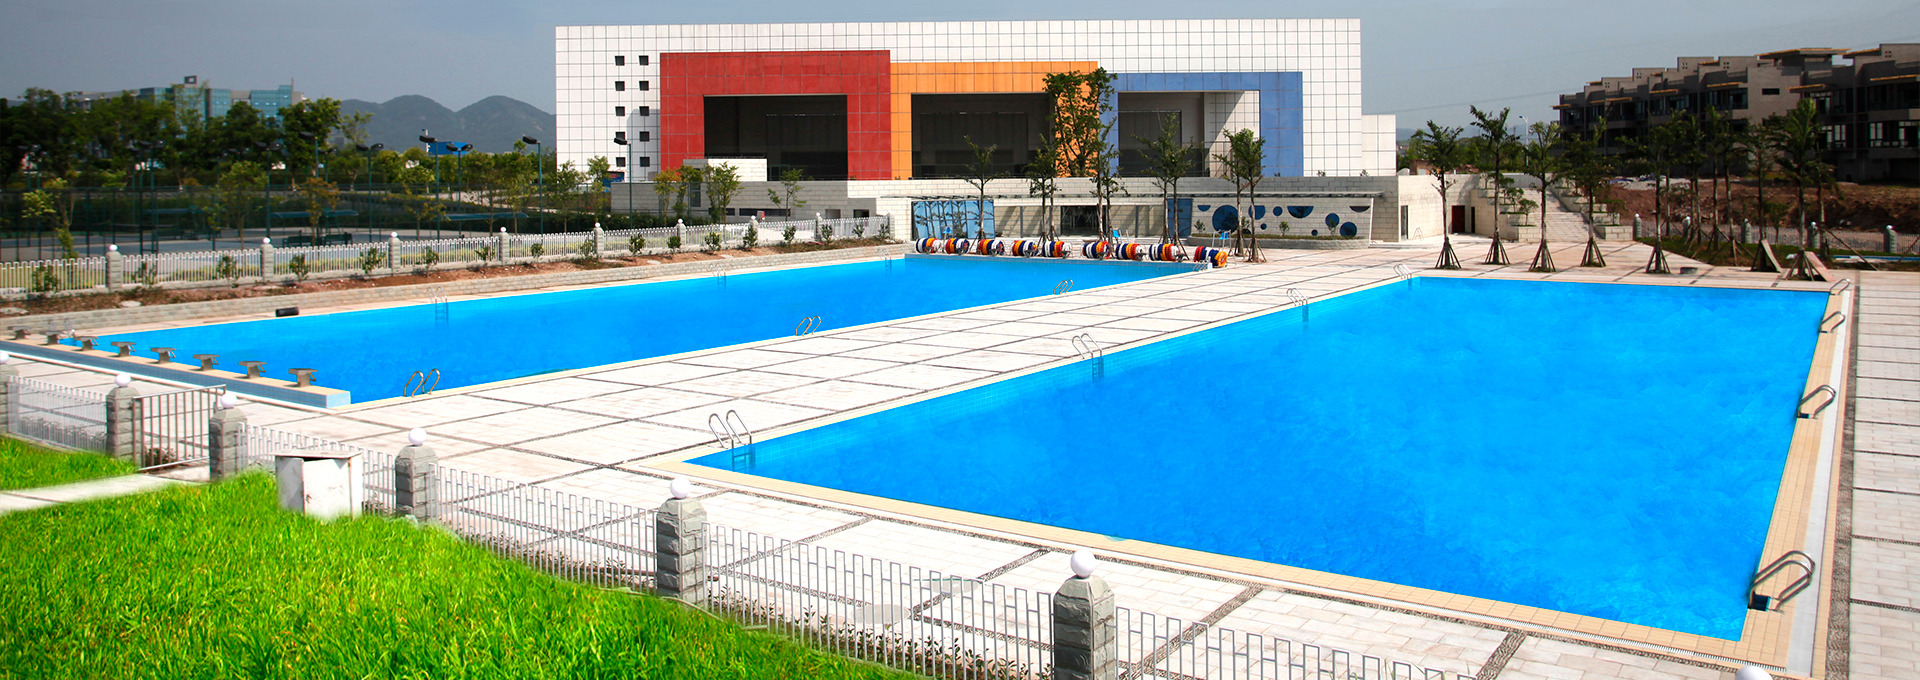 重庆科技大学游泳池工程项目